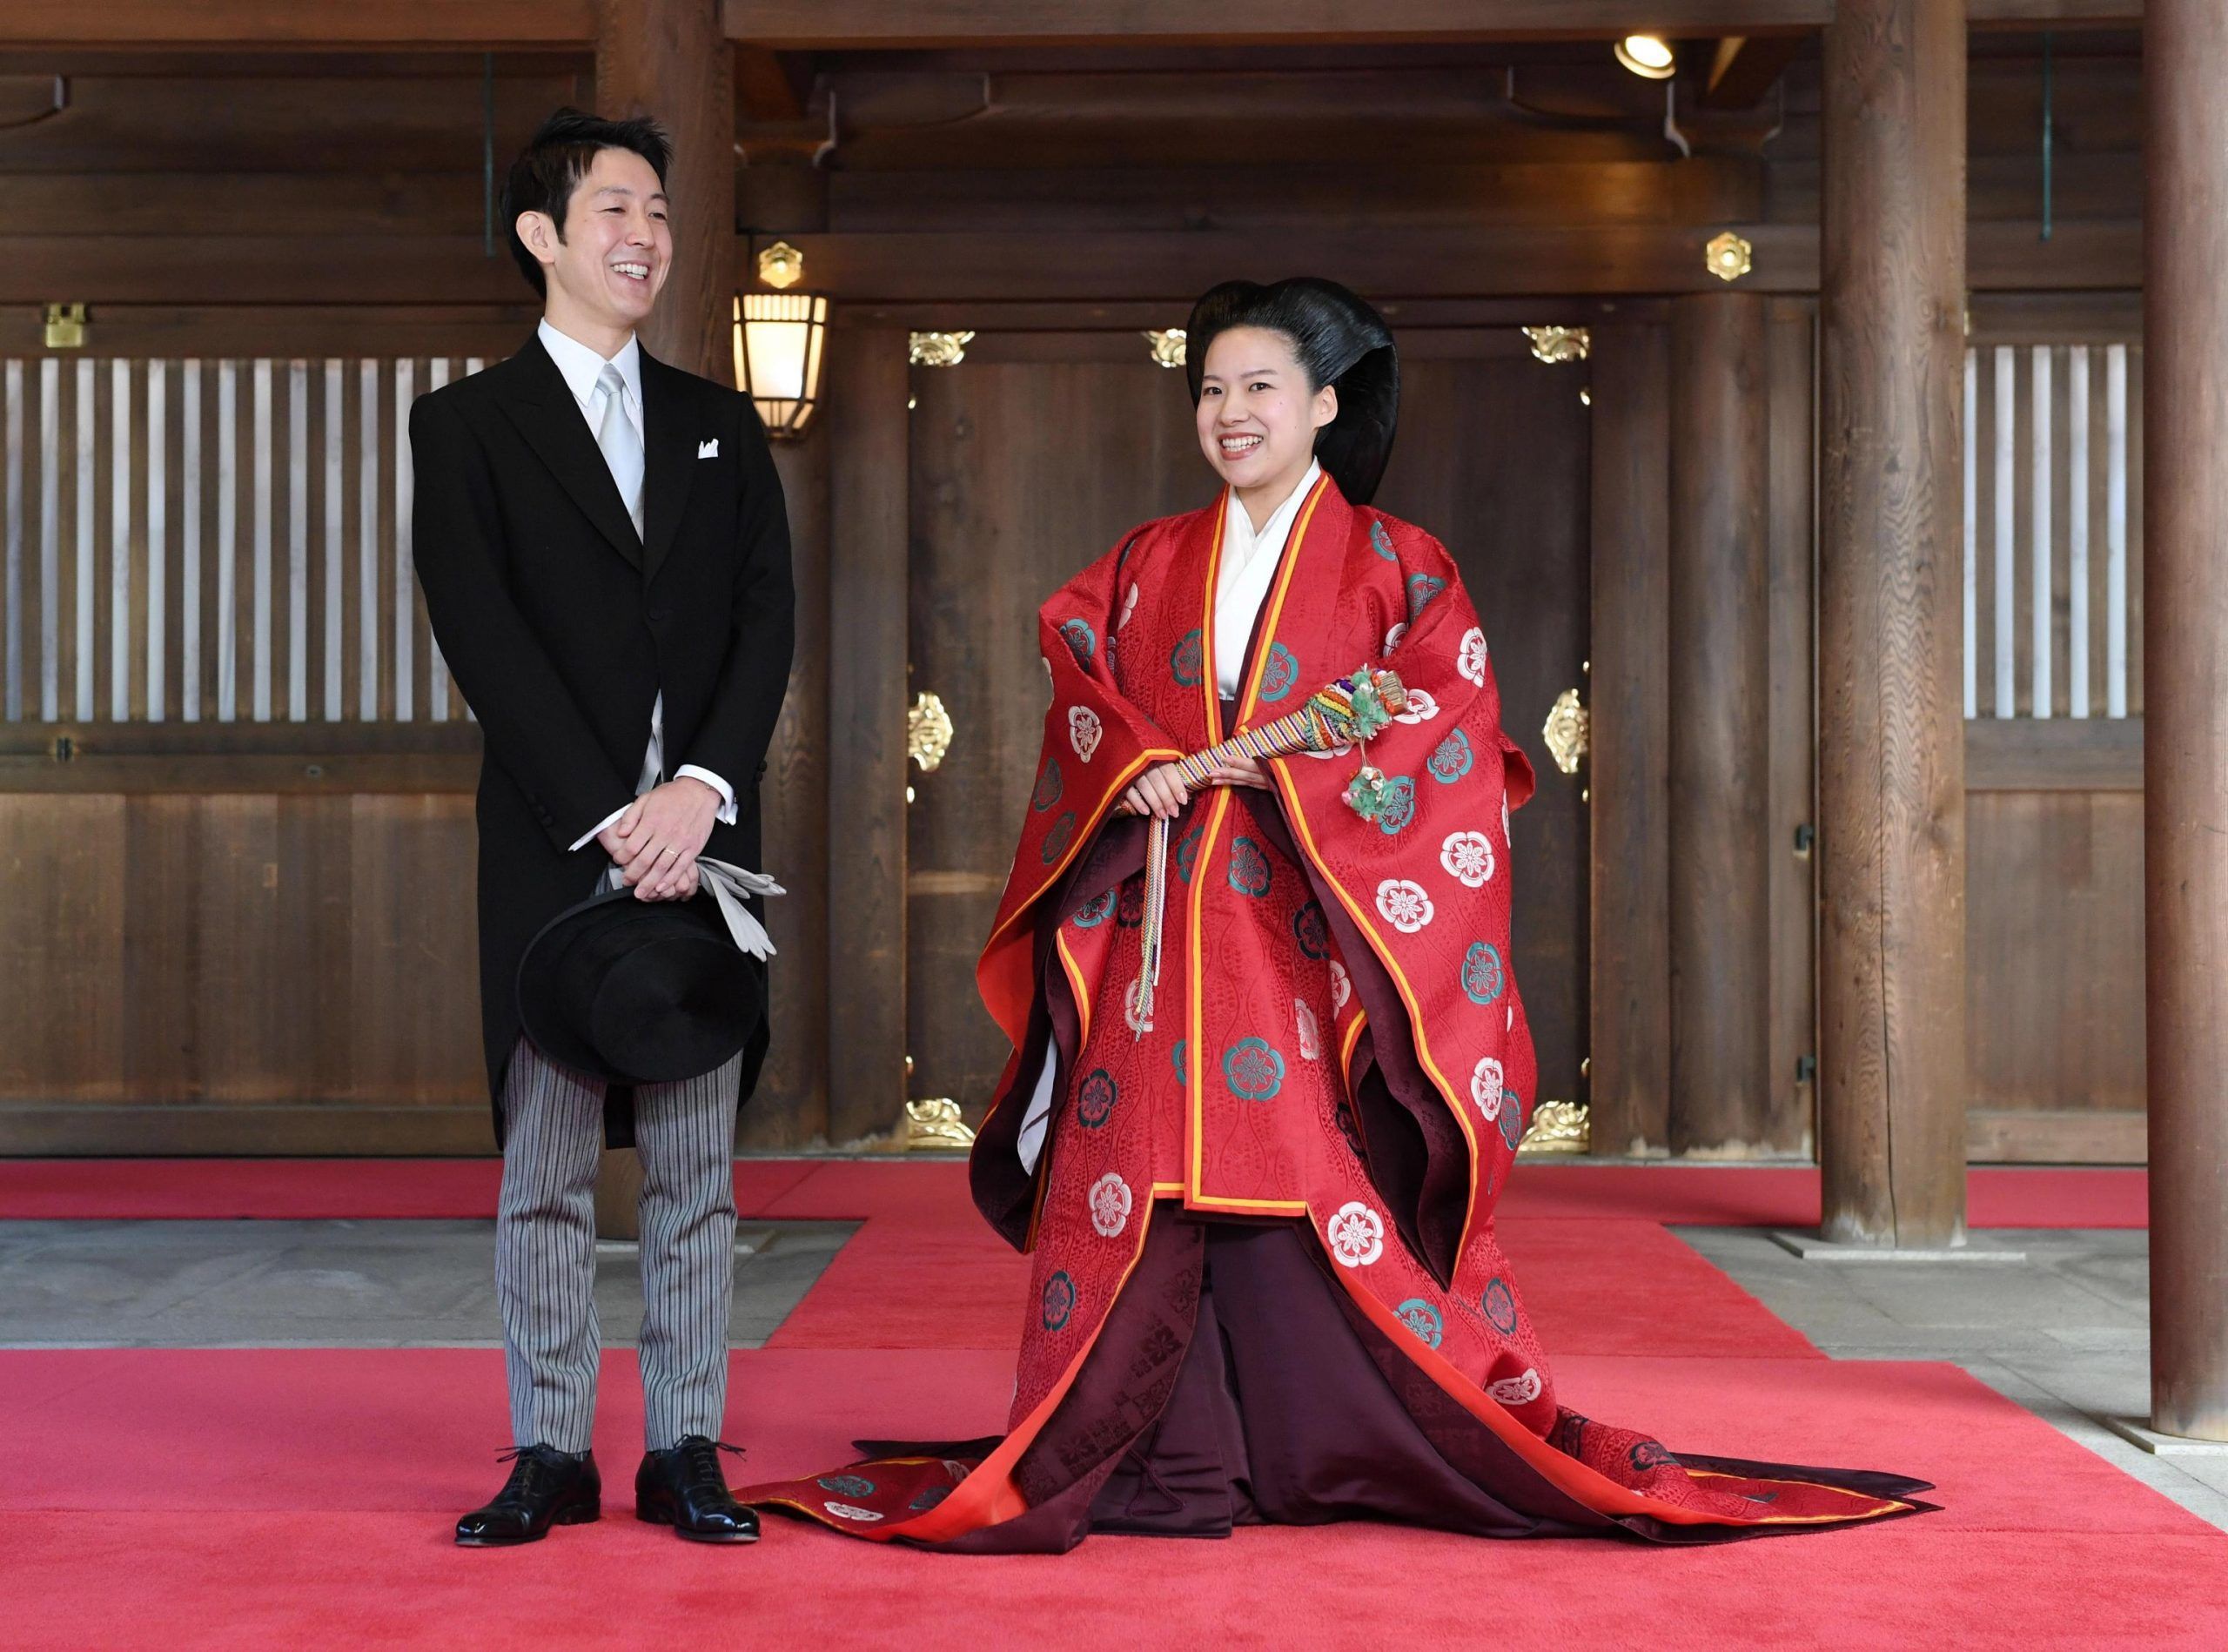 Giappone, la principessa Ayako sposa un impiegato e rinuncia al titolo